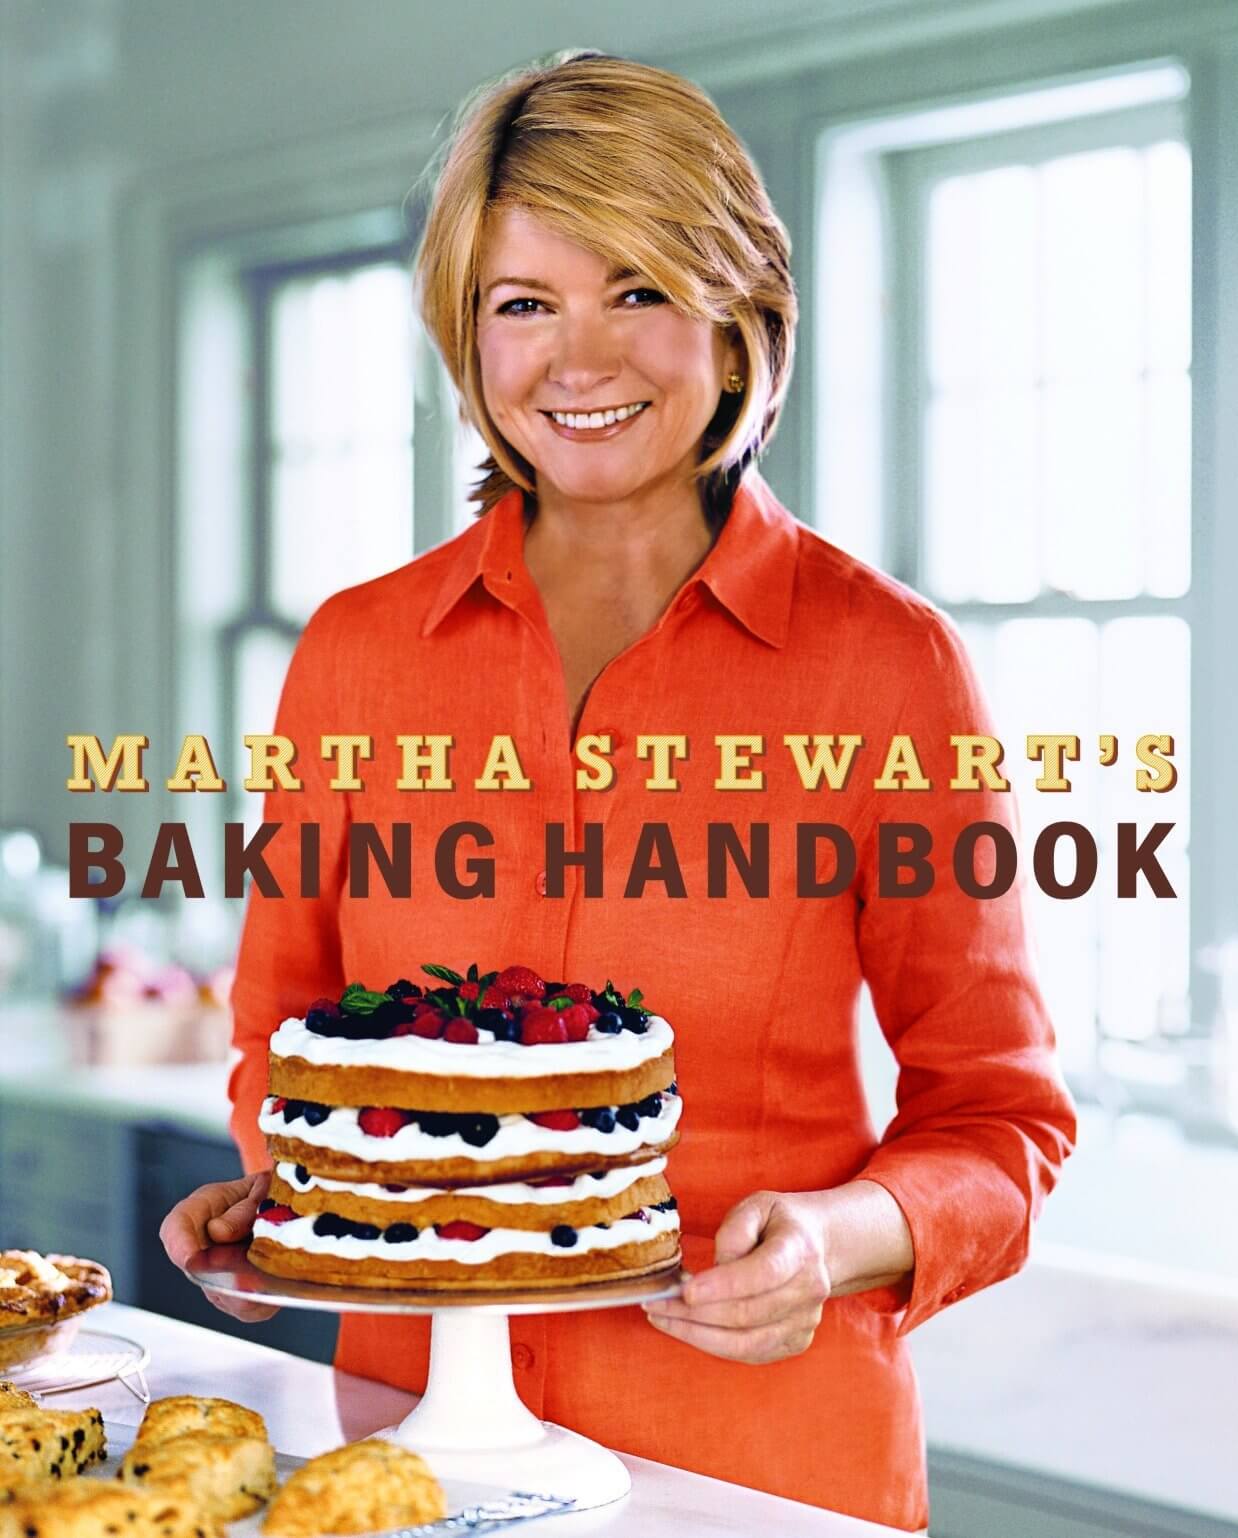 "Martha Stewart's Baking Handbook" by Martha Stewart